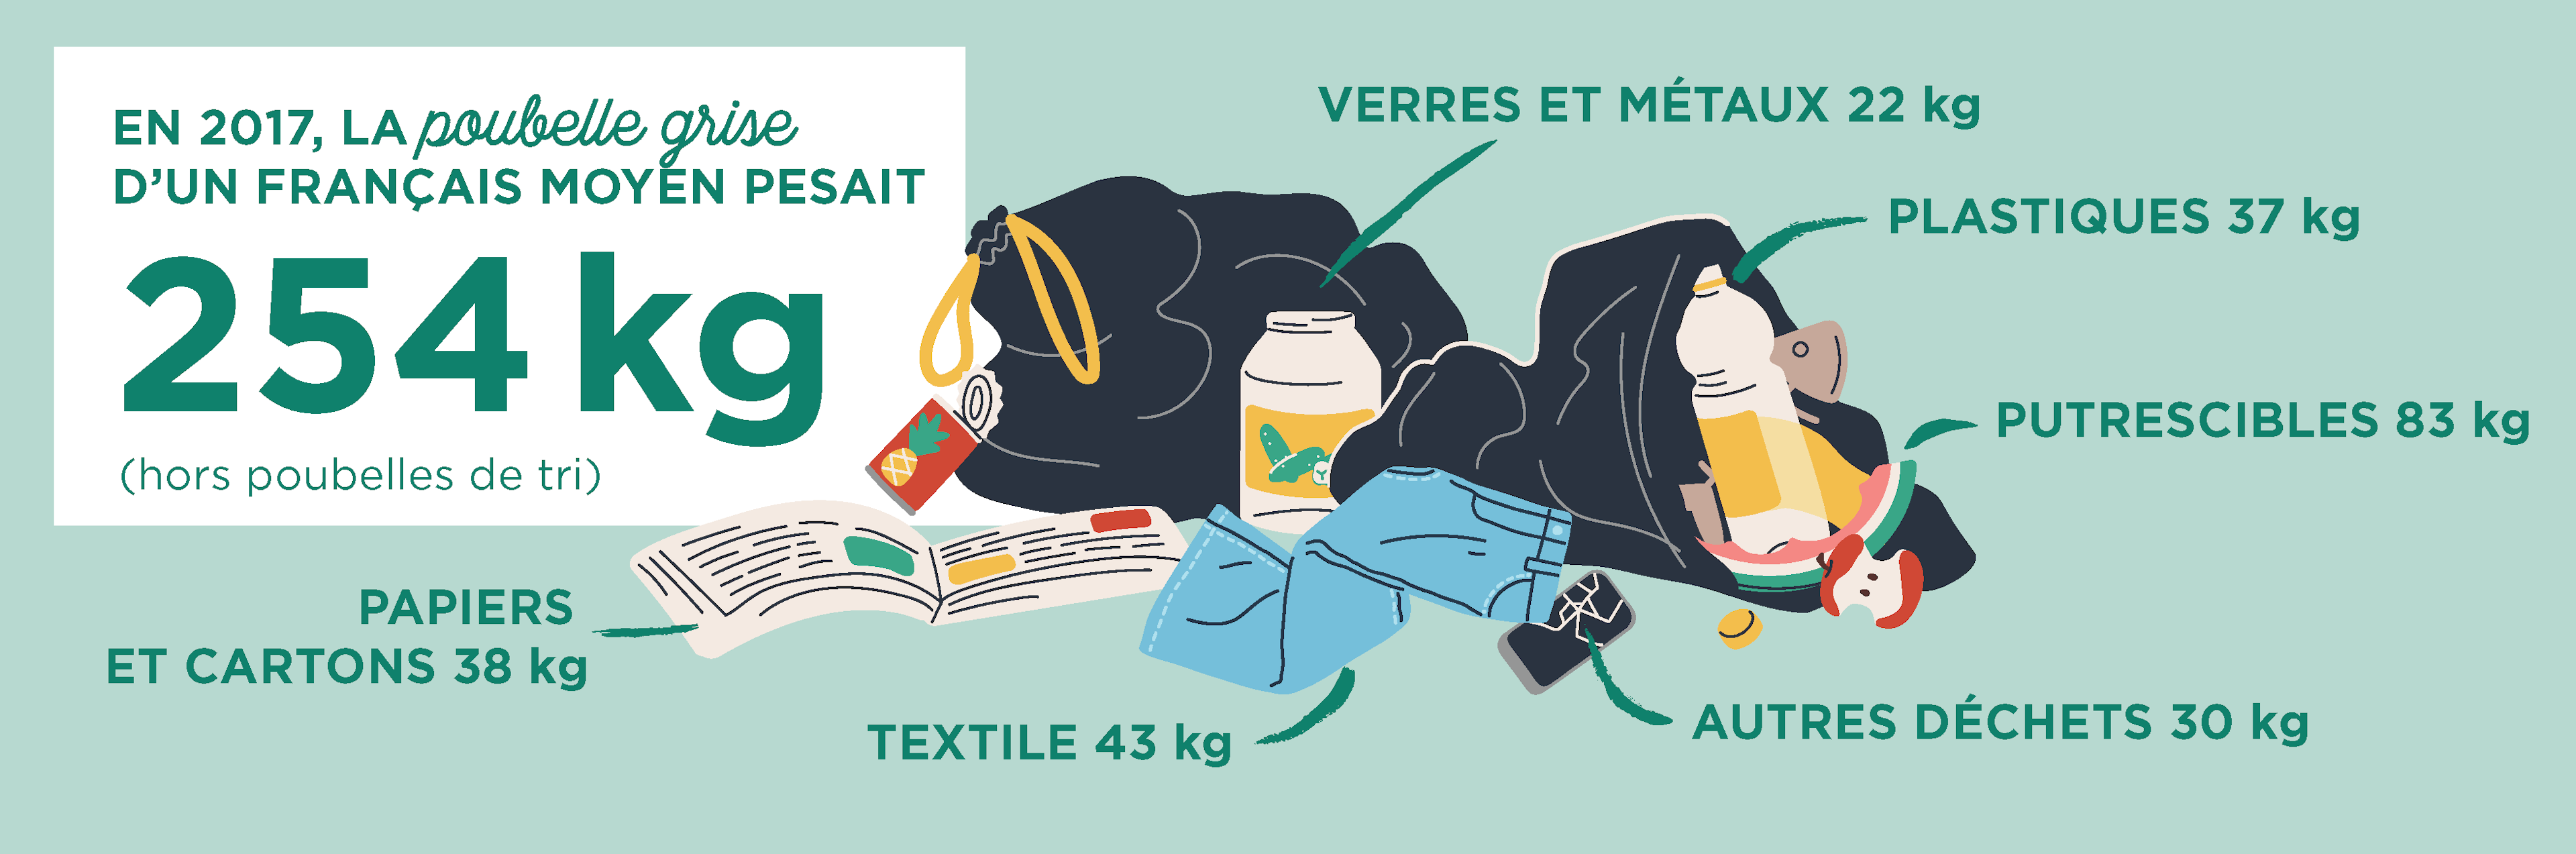 Infographie : une poubelle grise d'un français moyen pesait 254 kg en 2017